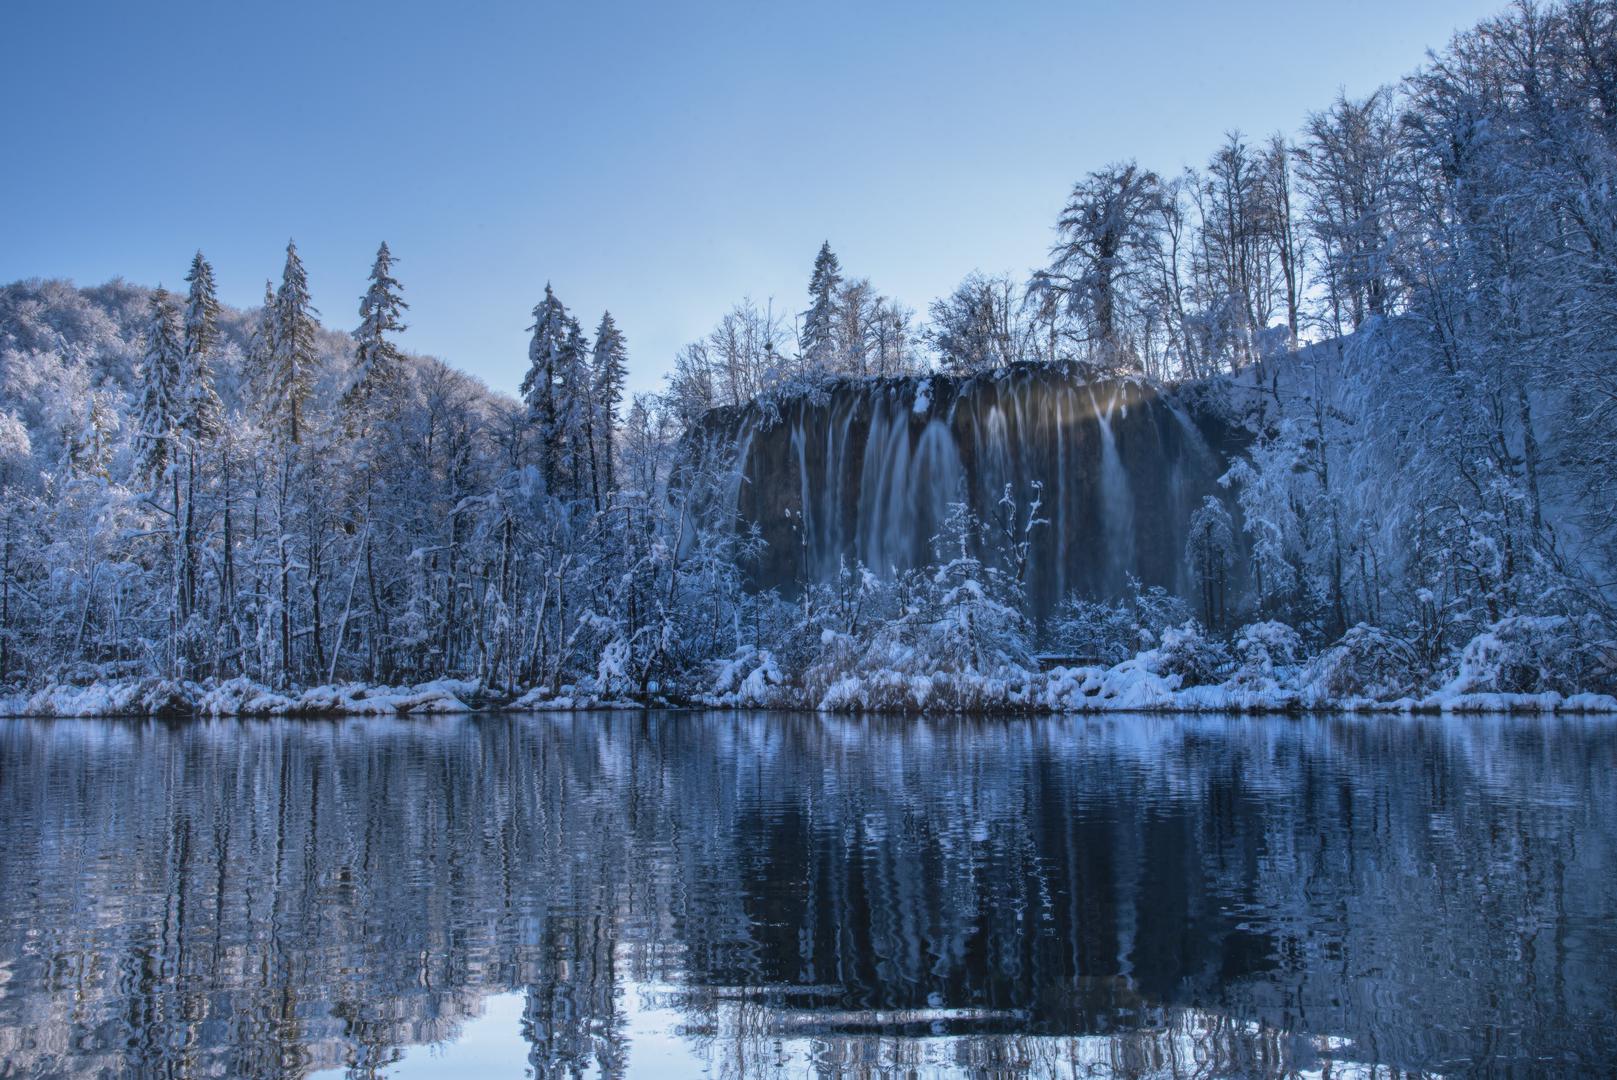 Zbog 45 centimetara snijega Gornja jezera u nacionalnom parku zatvorena su za posjetitelje. 